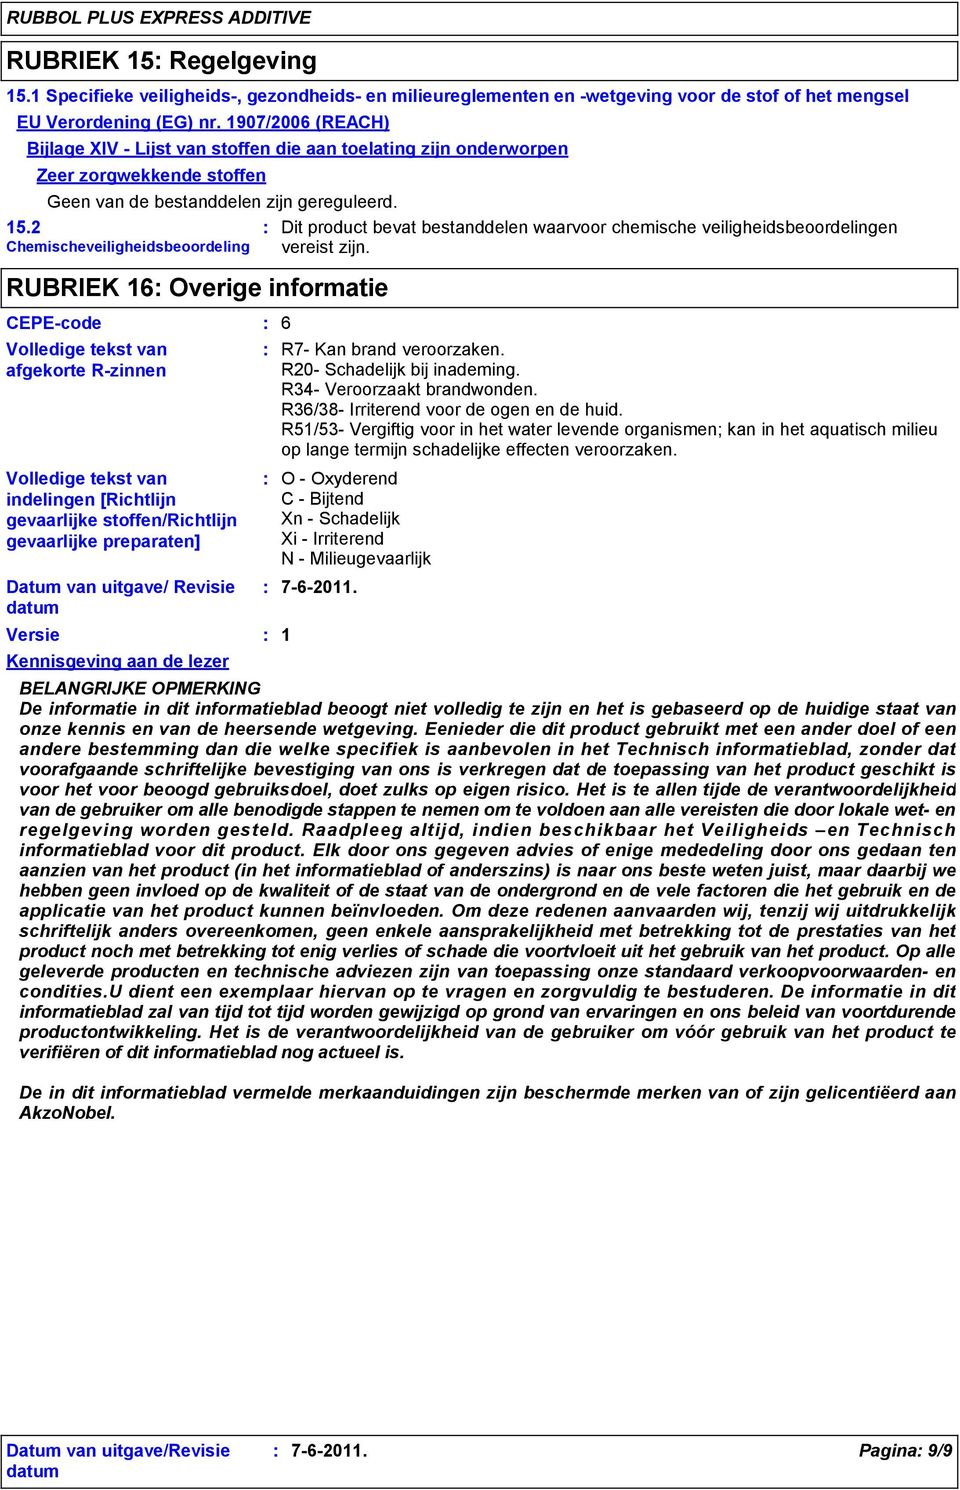 2 Chemischeveiligheidsbeoordeling RUBRIEK 16 Overige informatie CEPE-code 6 Volledige tekst van afgekorte R-zinnen Volledige tekst van indelingen [Richtlijn gevaarlijke stoffen/richtlijn gevaarlijke